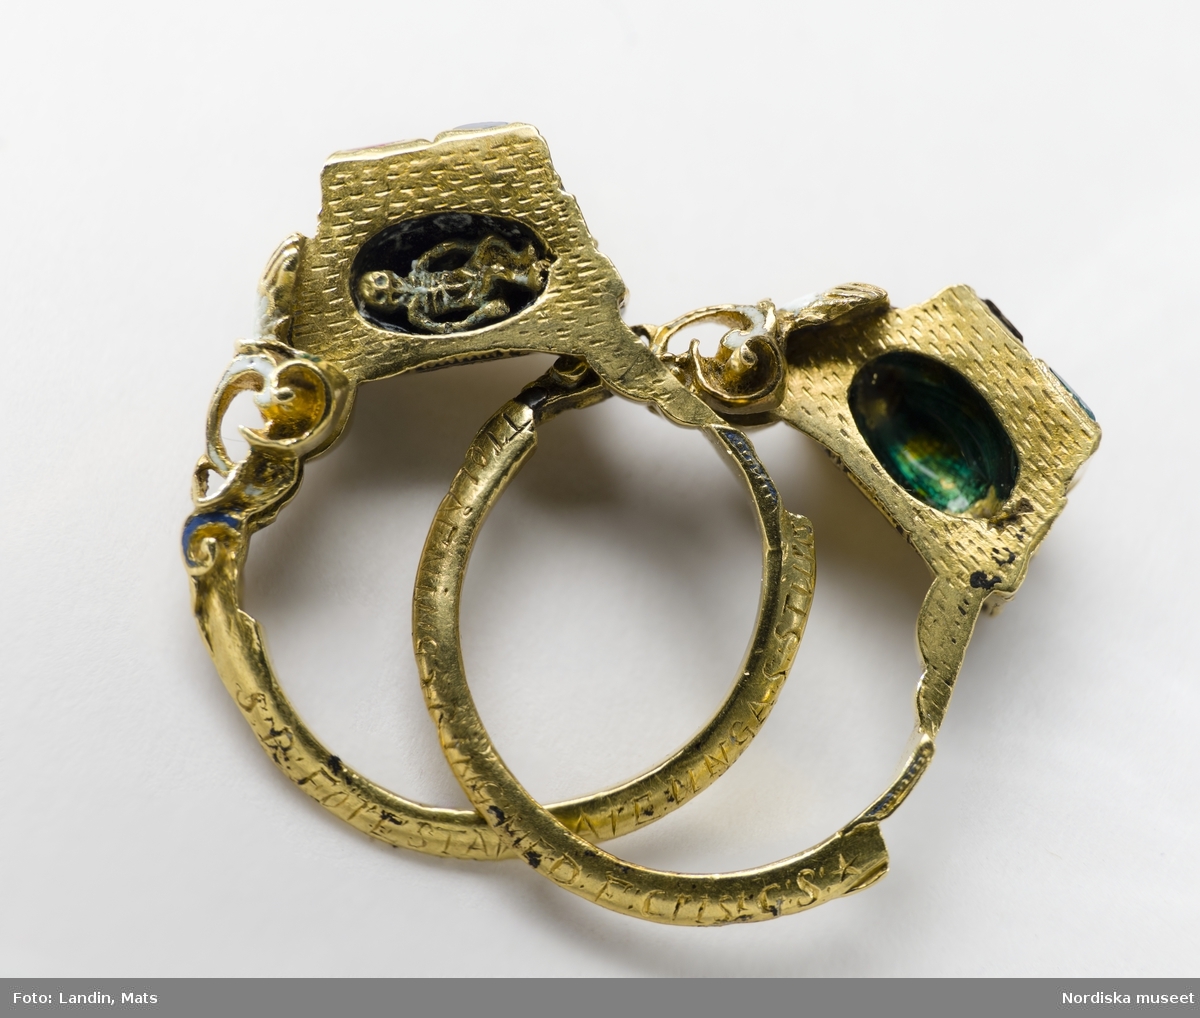 Smycken. Stureringen i guld med bl a innefattad smaragd. Stureringen är en delbar guldring med smaragd, safir, rubin, bergkristall och emalj från 1500-talet. Stenarna bärs upp av två händer som håller varsitt hjärta. Inuti finns ett miniatyrskelett av guld - en symbol för döden."Den gud förenat skall ingen åtskilja står det i ringen som tillhört Sten Sture d.y. Ringen kan ha befäst hans trolovning med Kristina Gyllenstierna år 1511.
Föremål ur Nordiska museets samlingar invnr: 306420+.  

Se även: NMA.0043633, samt föremålsposten: NM.0306420+